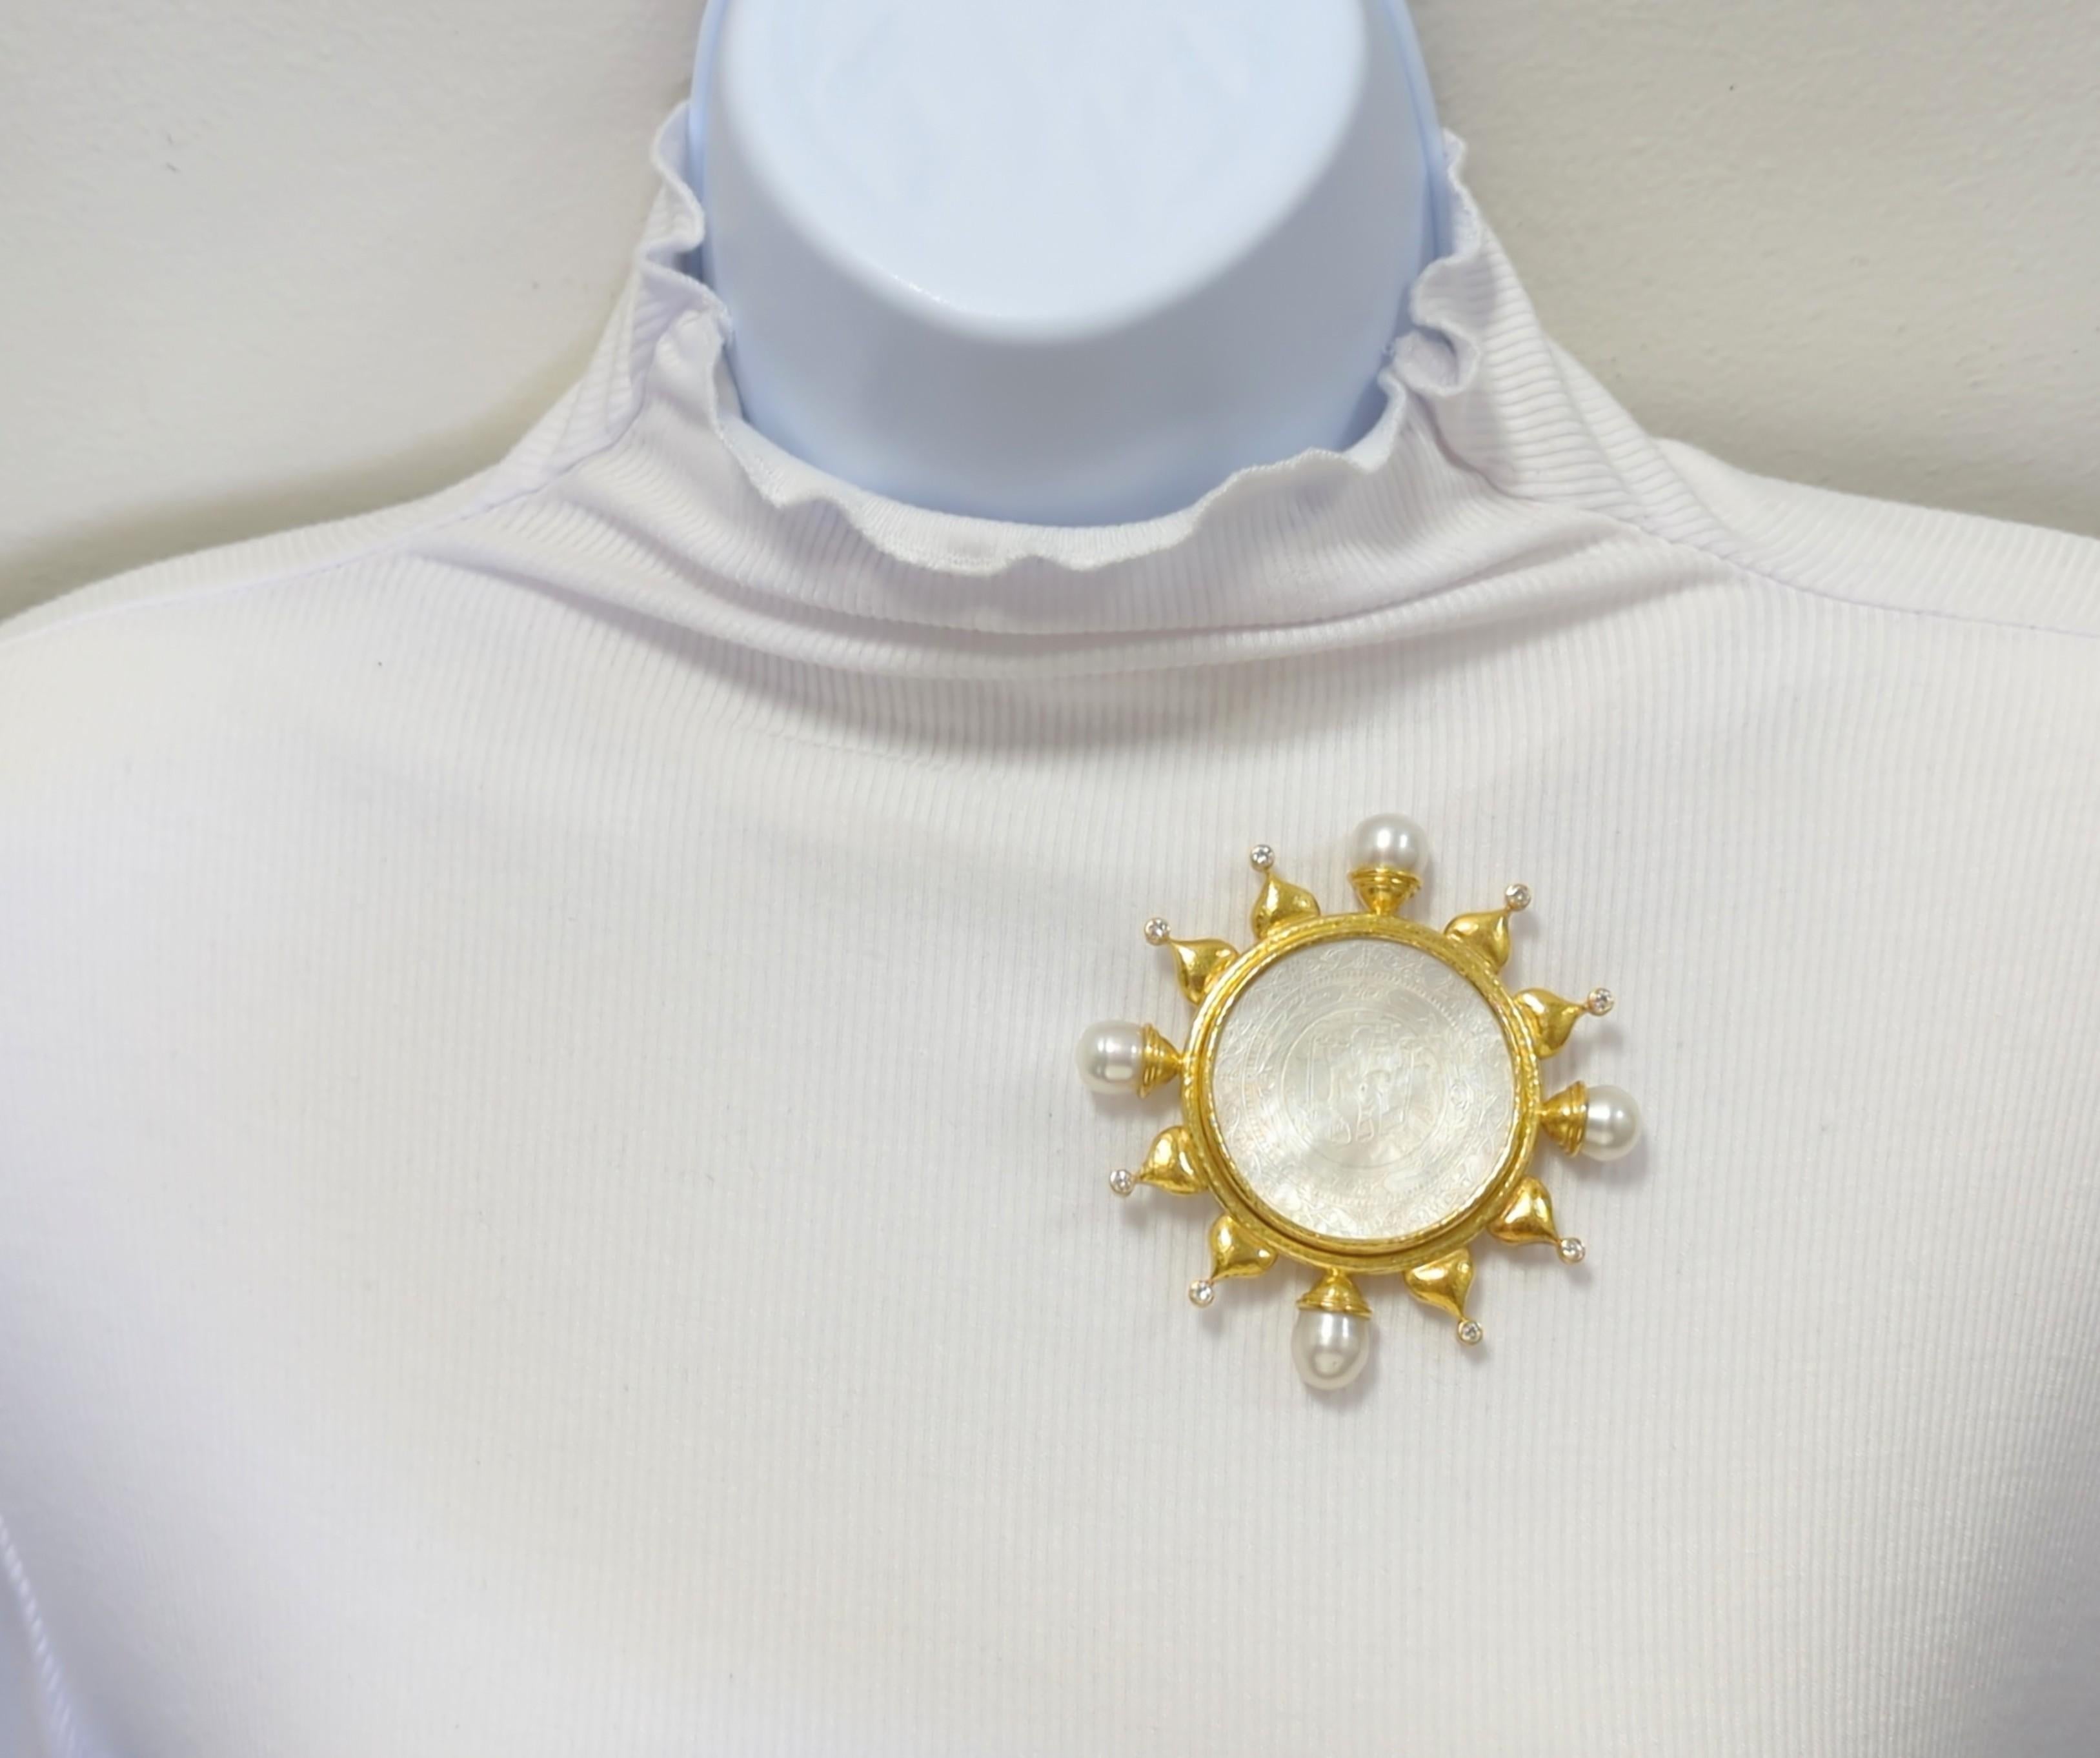 Magnifique broche Chinese Gaming d'Elizabeth composée de perles blanches et de diamants blancs ronds.  Fabriqué à la main en or jaune 18k.